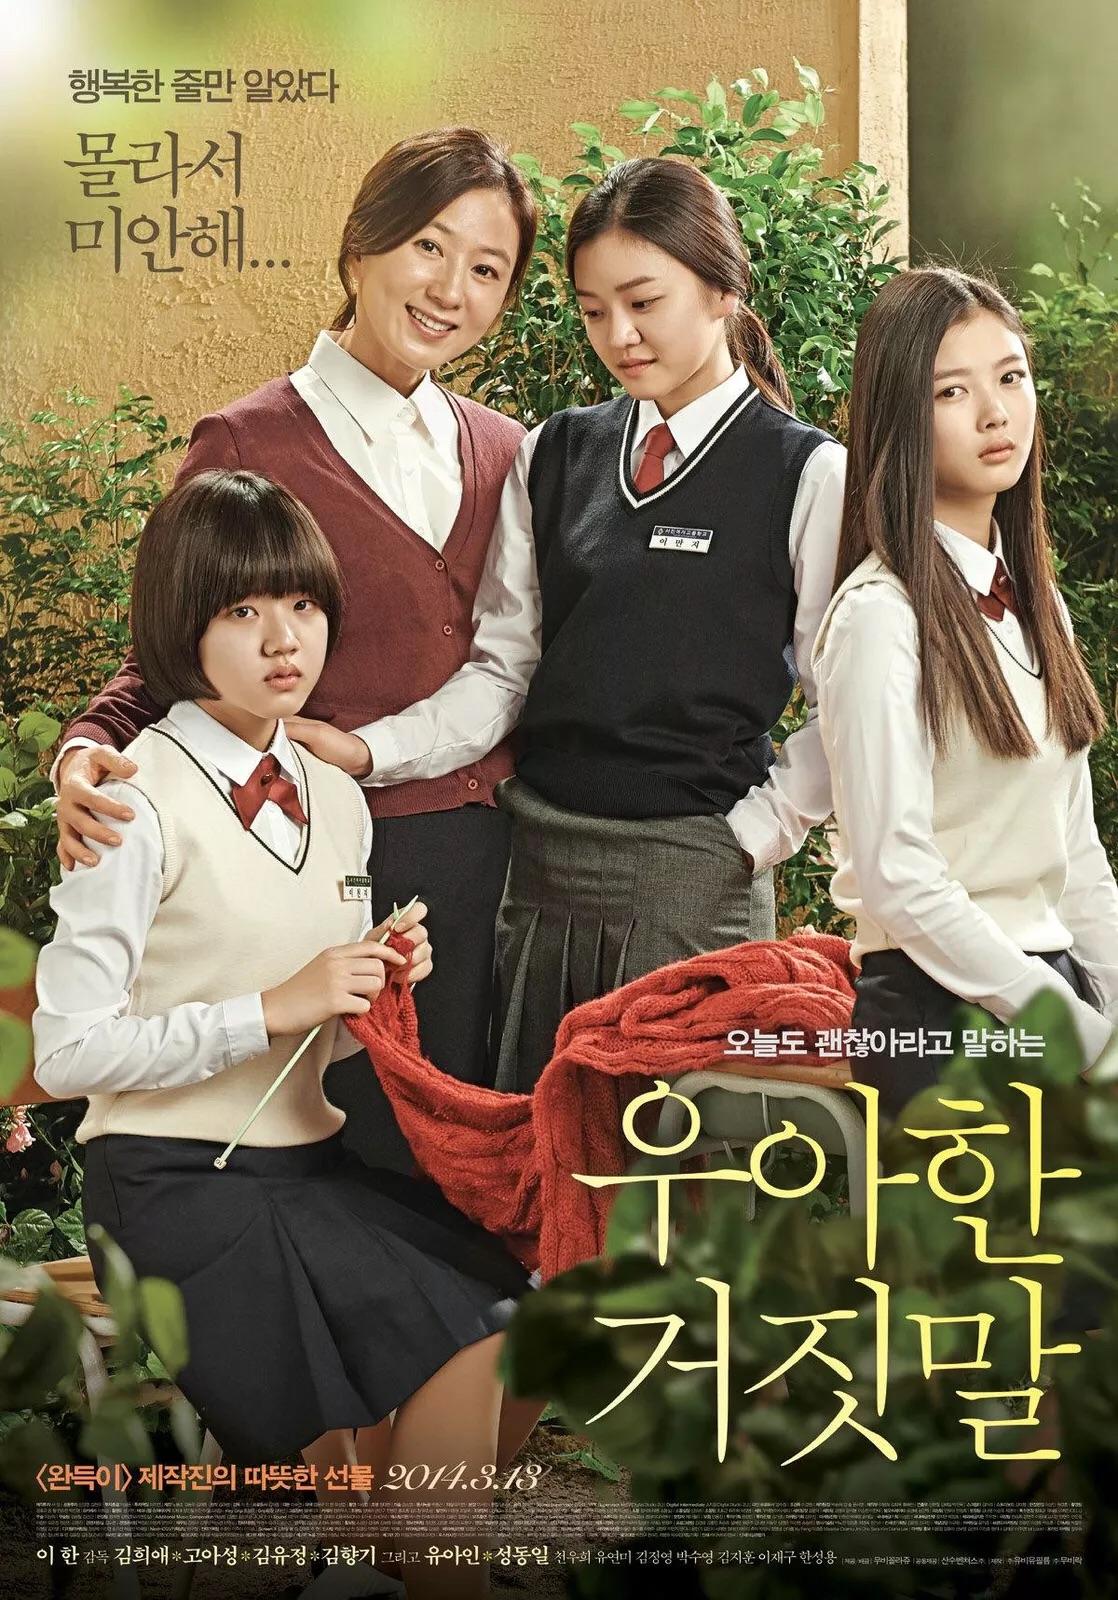 求大神推荐韩国好看的青春校园电视剧或者电影哦,如果是韩国电影的话